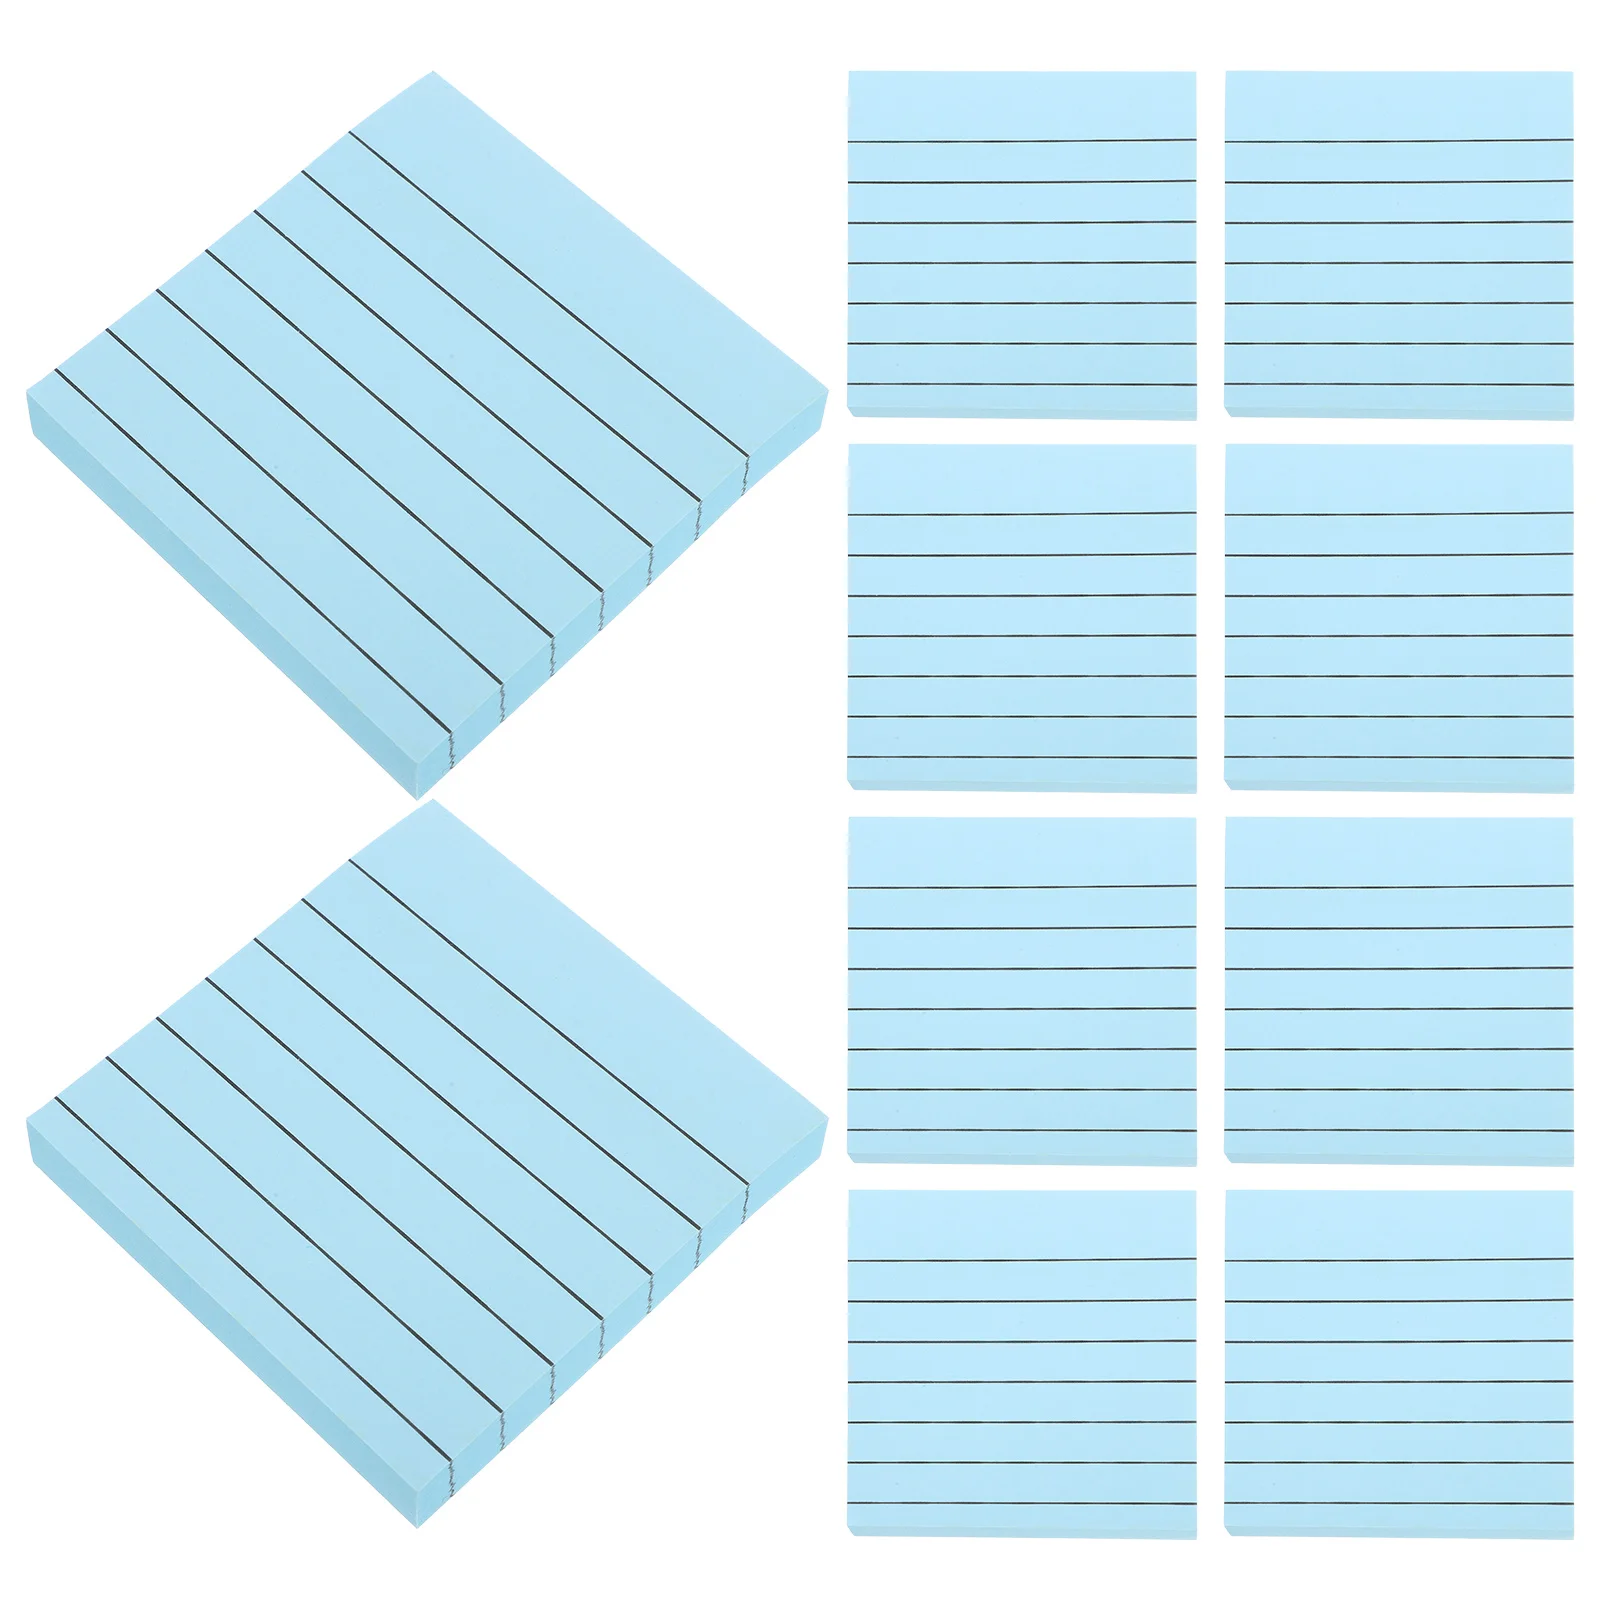 20шт портативных блокнотов для заметок, блокноты для заметок, липкие блокноты для планирования расписания, блокноты Изображение 3